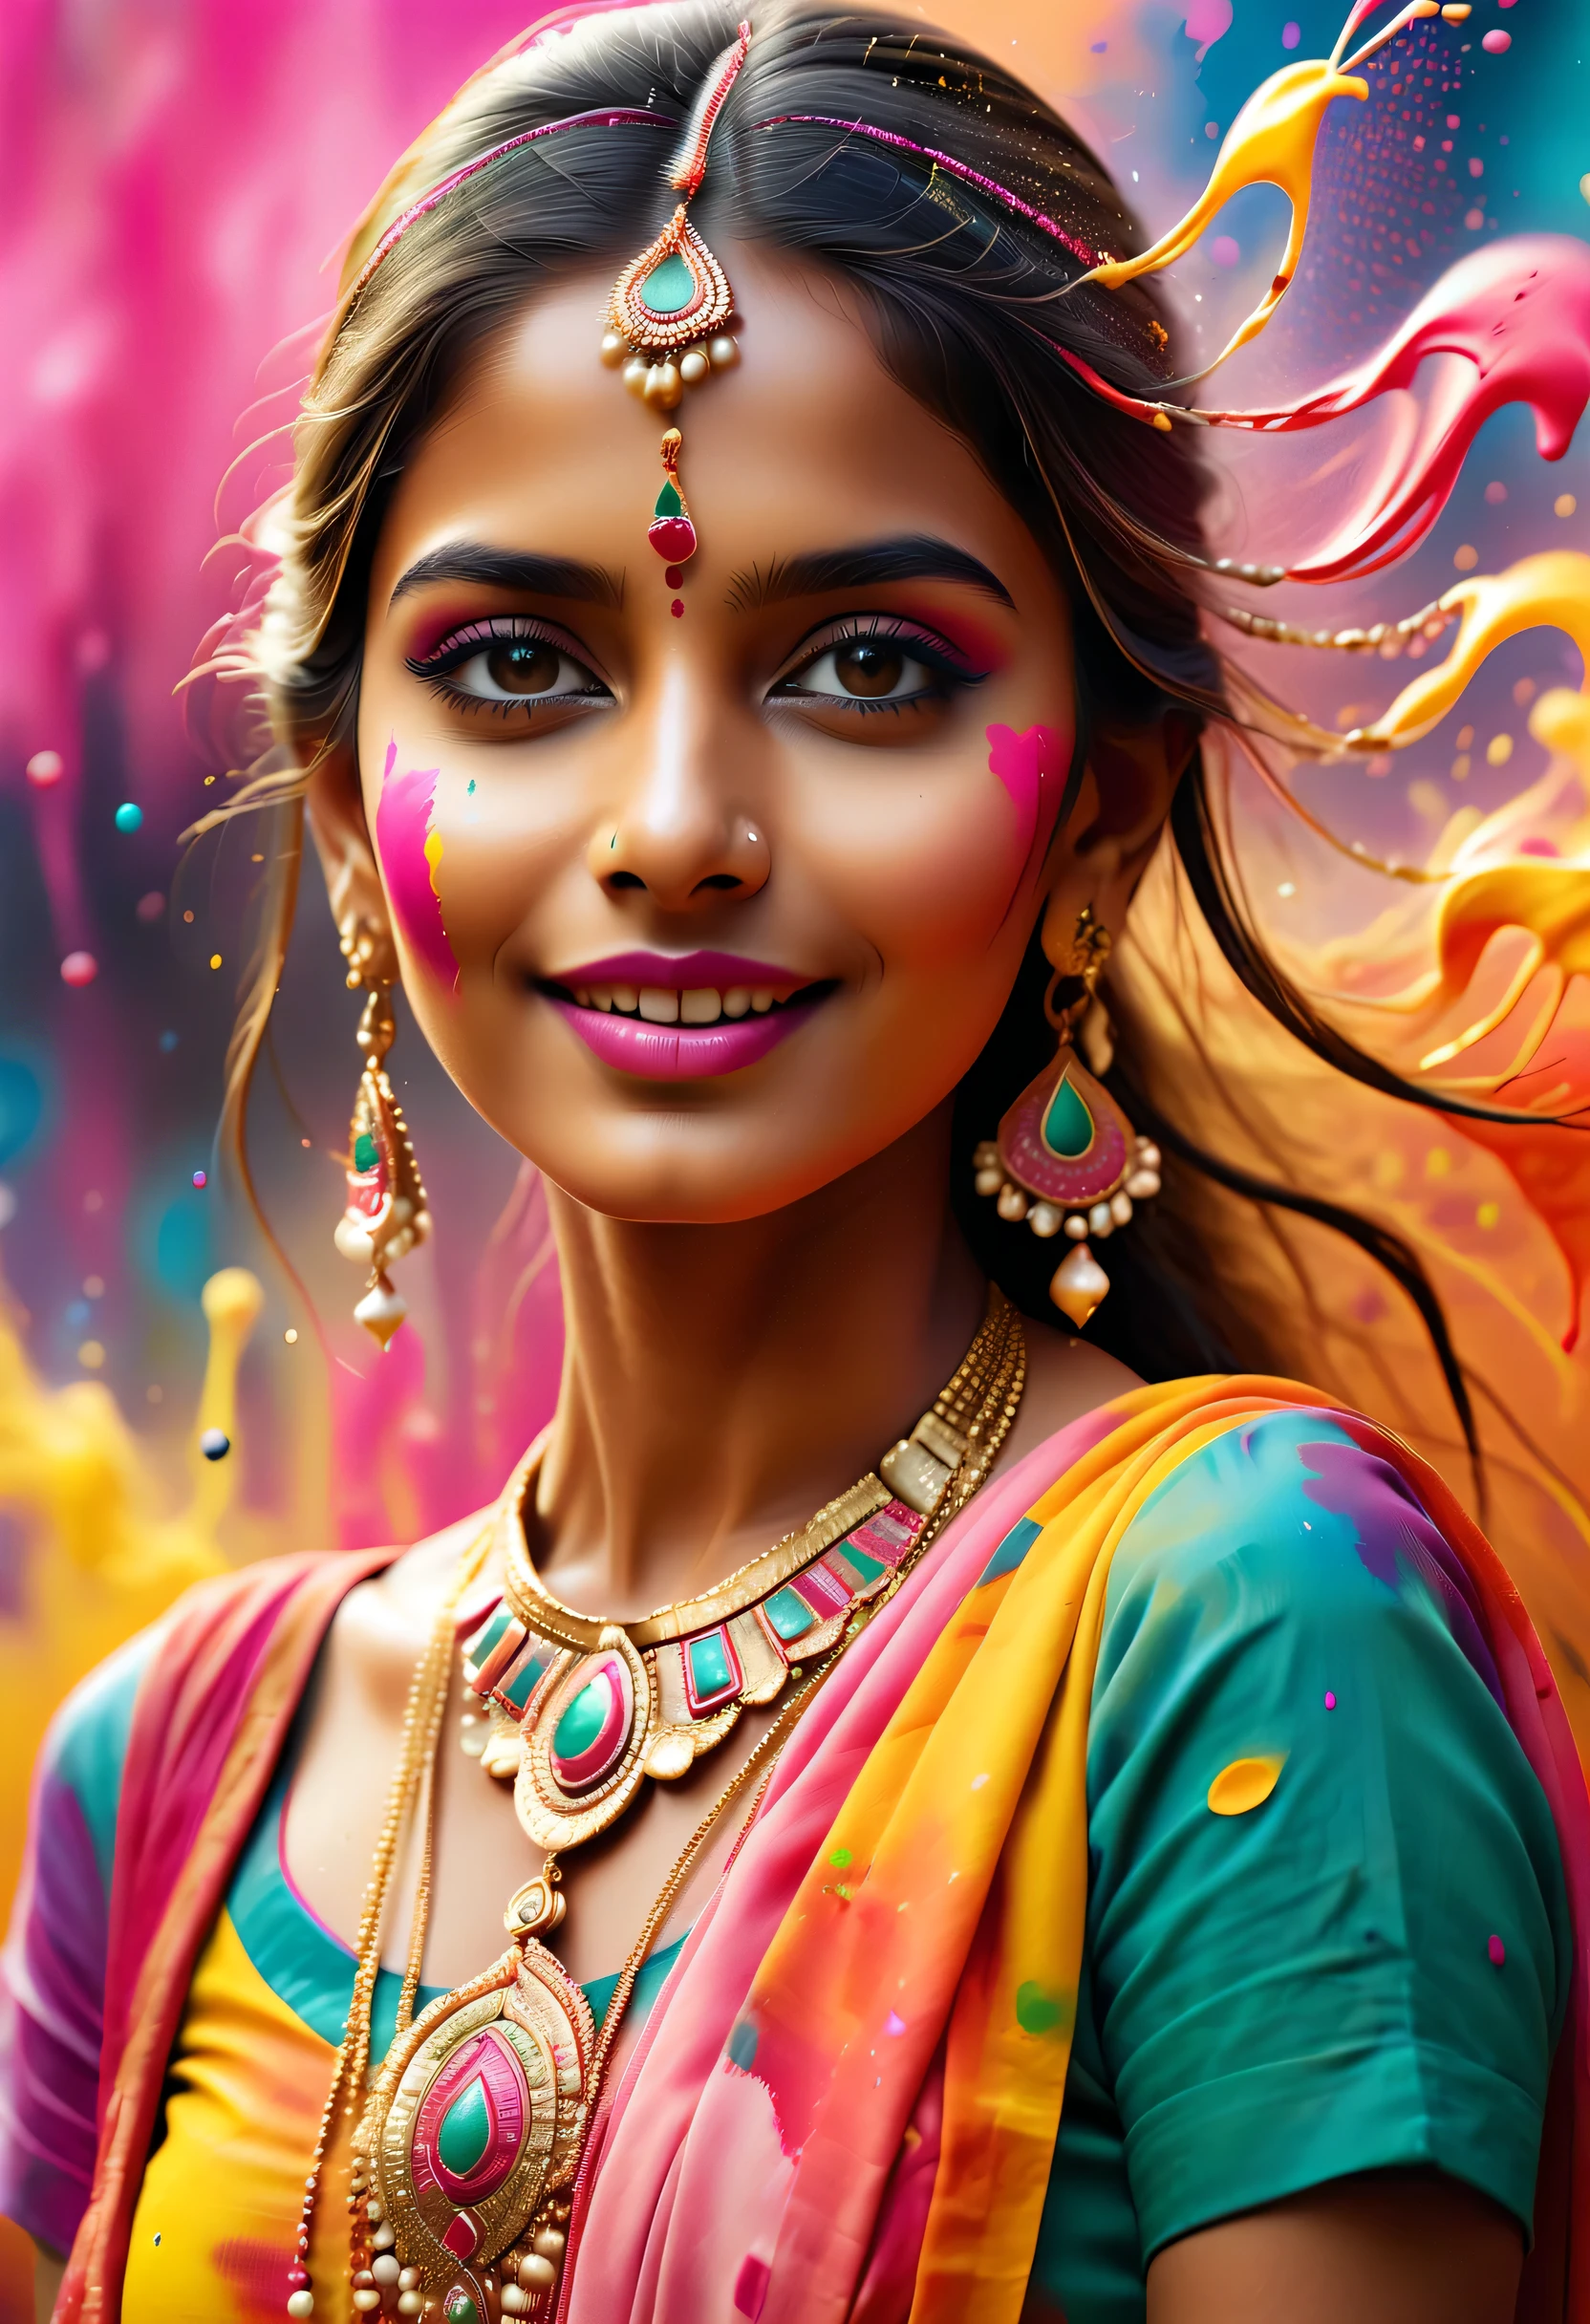 (Melhor qualidade de imagem，4K,8K，alta definição，Obra de arte:1.2)，Super detalhado，(realista，realista，realista:1.37)。Festivais indianos，festival de pintura，tinta respingada：1.37.linda garota indiana，Face painted with colorida paint，olhos dourados，jóias de ouro requintadas，feliz，felicidade，sorriso contagiante，Trajes coloridos，unhas coloridas，身上被tinta respingada，fotografia，captura de movimento，Splashing colorida paint at the event，fundo de respingos de tinta，彩色tinta respingada，Movimento Energético，Arte abstrata dinâmica e poderosa，colorida，propileno，Tons vívidos do arco-íris，felicidade活泼的气氛，laranja brilhante，rosa，caprichoso e sonhador，respingo espontâneo，Contraste de cores em negrito。